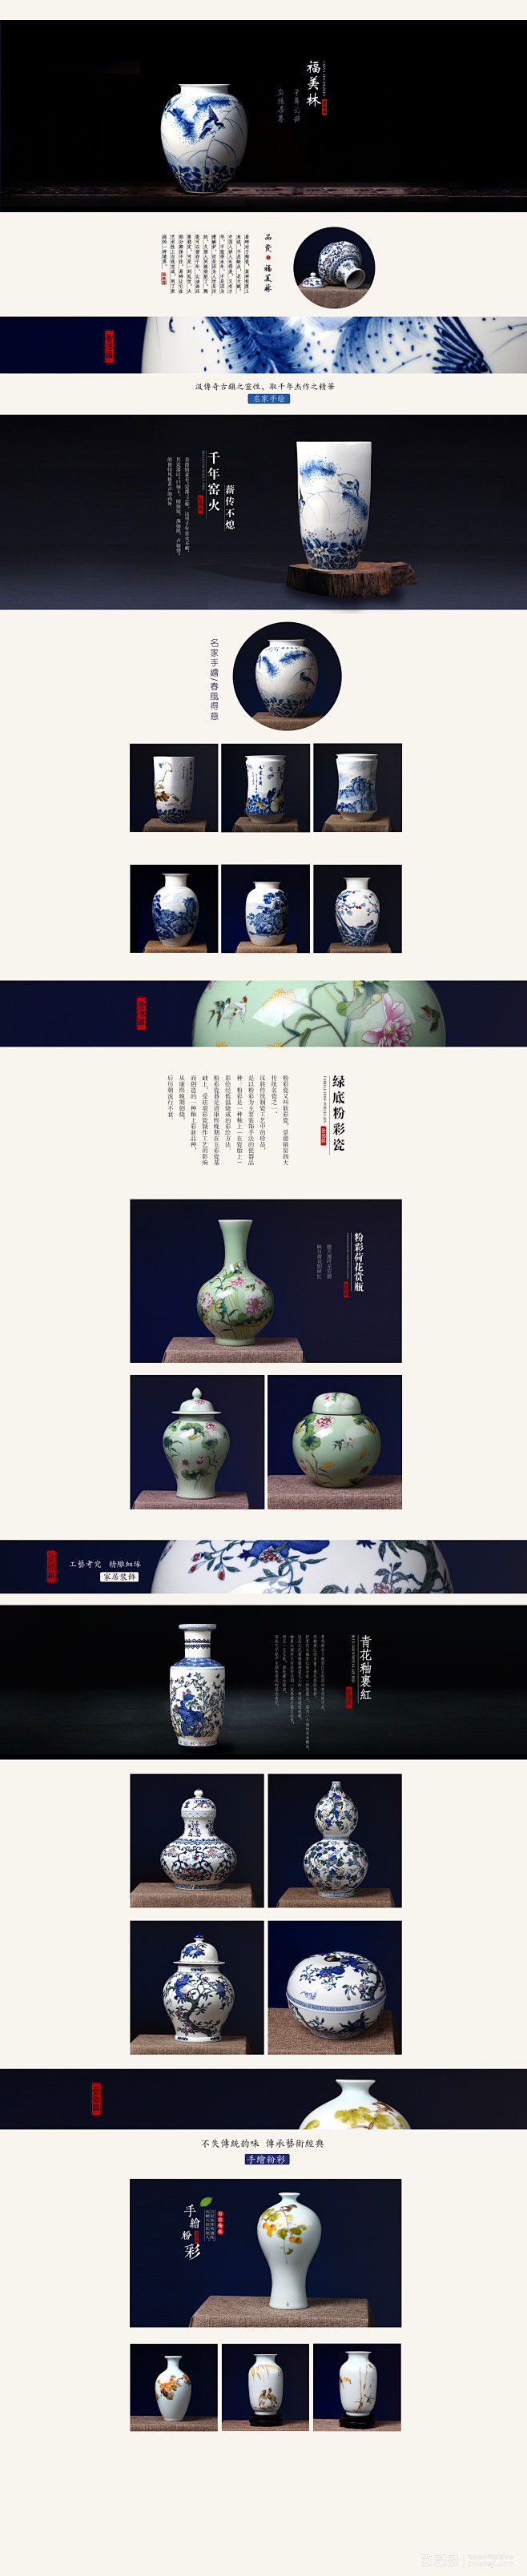 中式风格陶瓷花瓶页面#古典#瓷器#大气